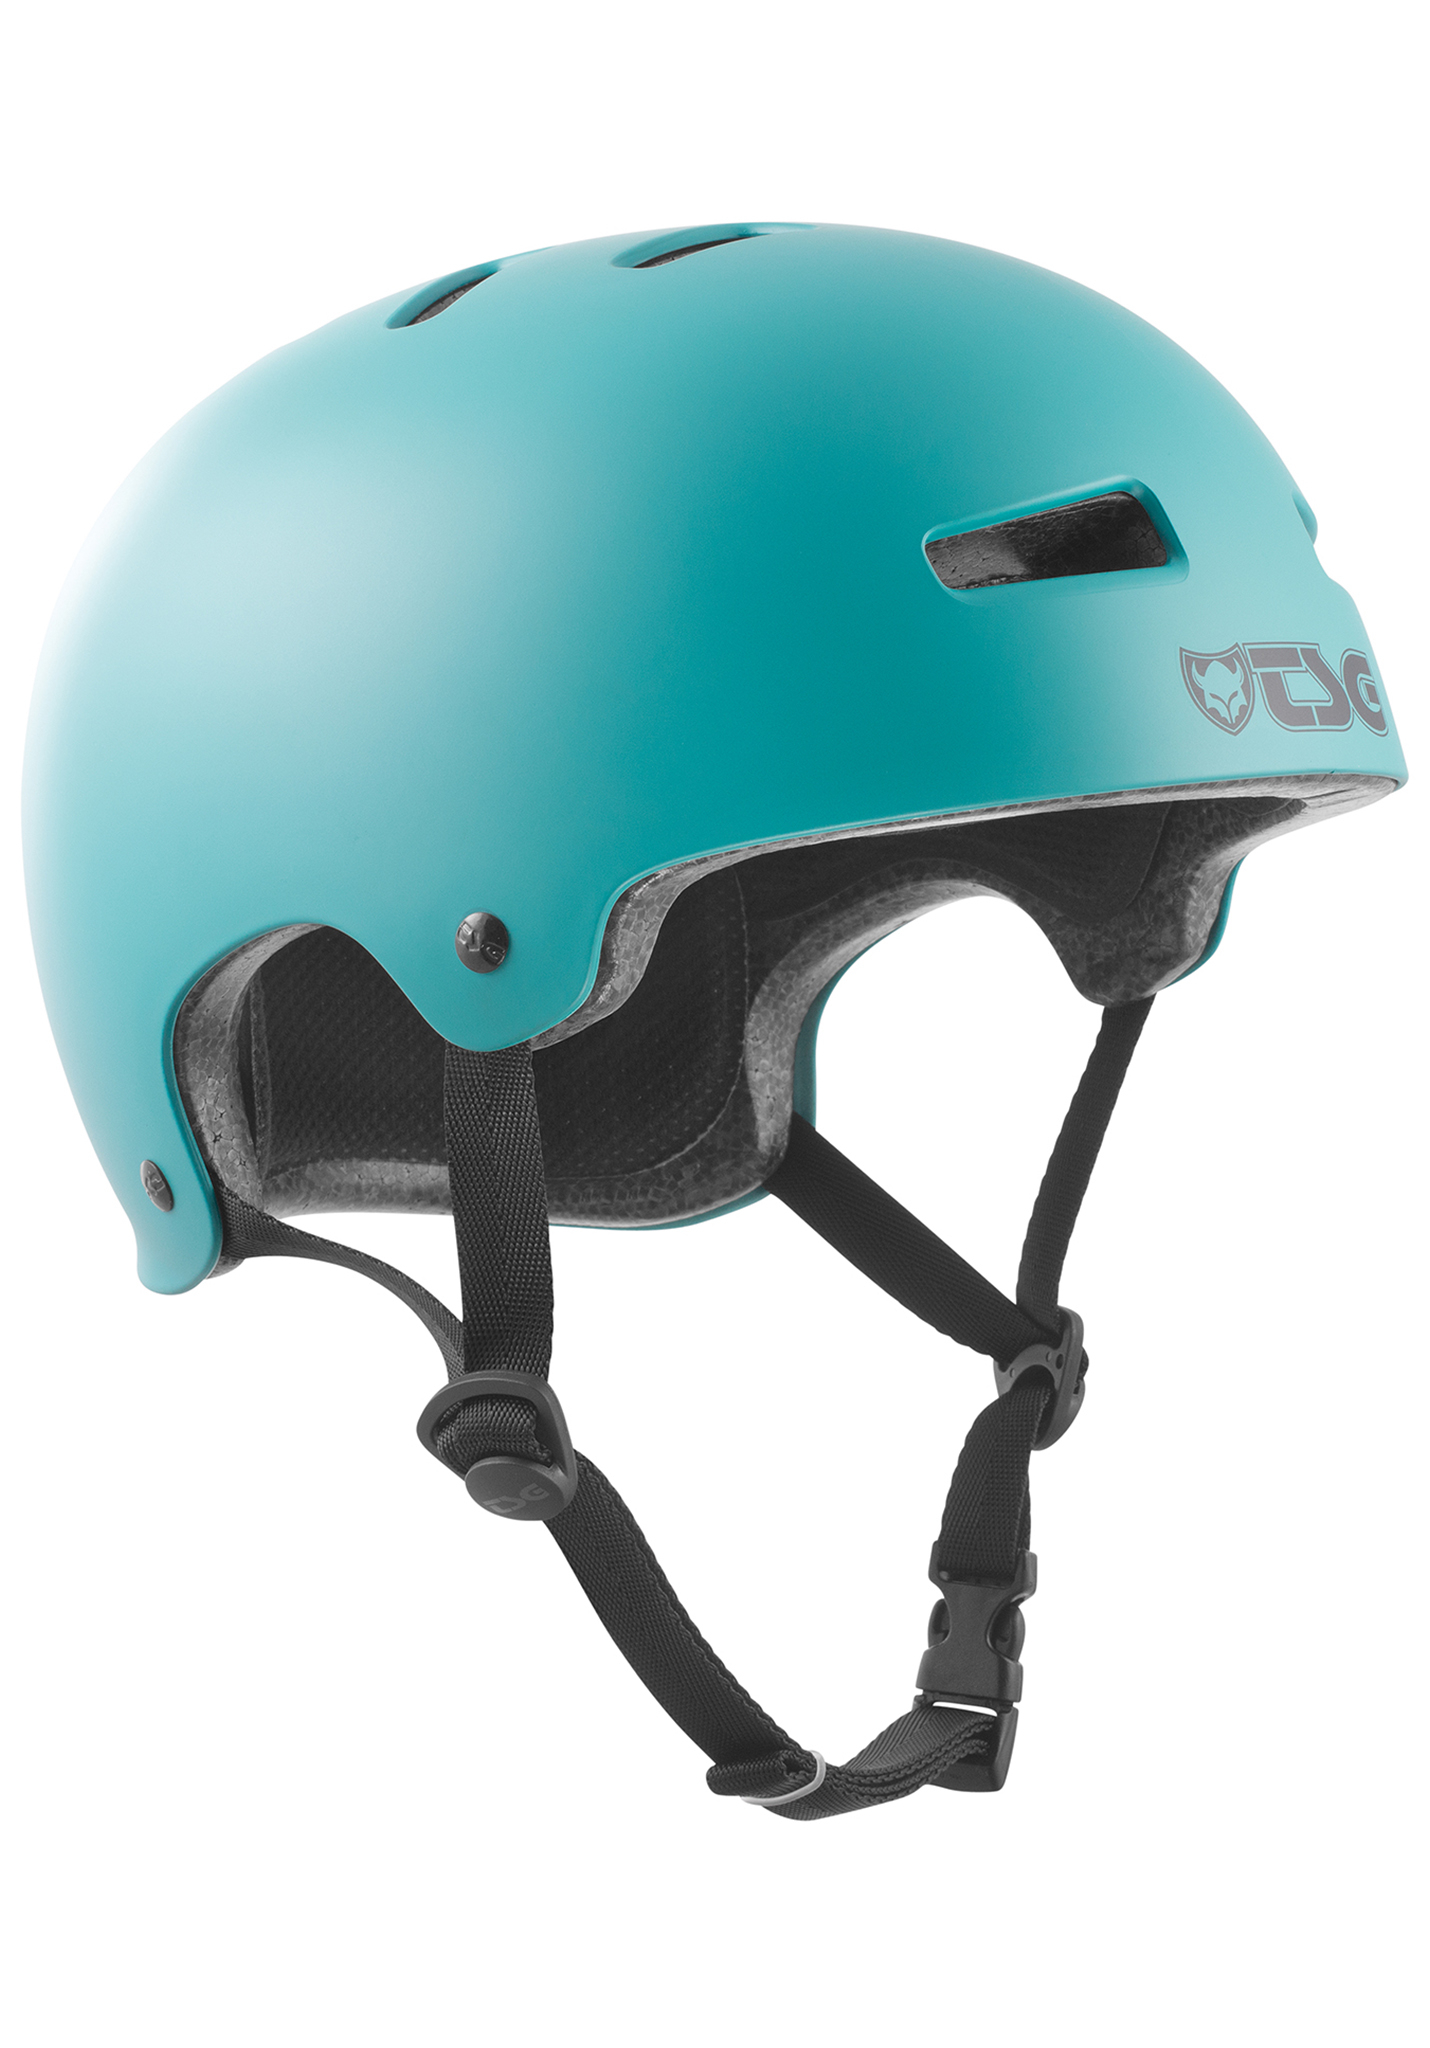 TSG TSG Evolution satin lime green L/XL Skate Helme Helm blau grün L/XL